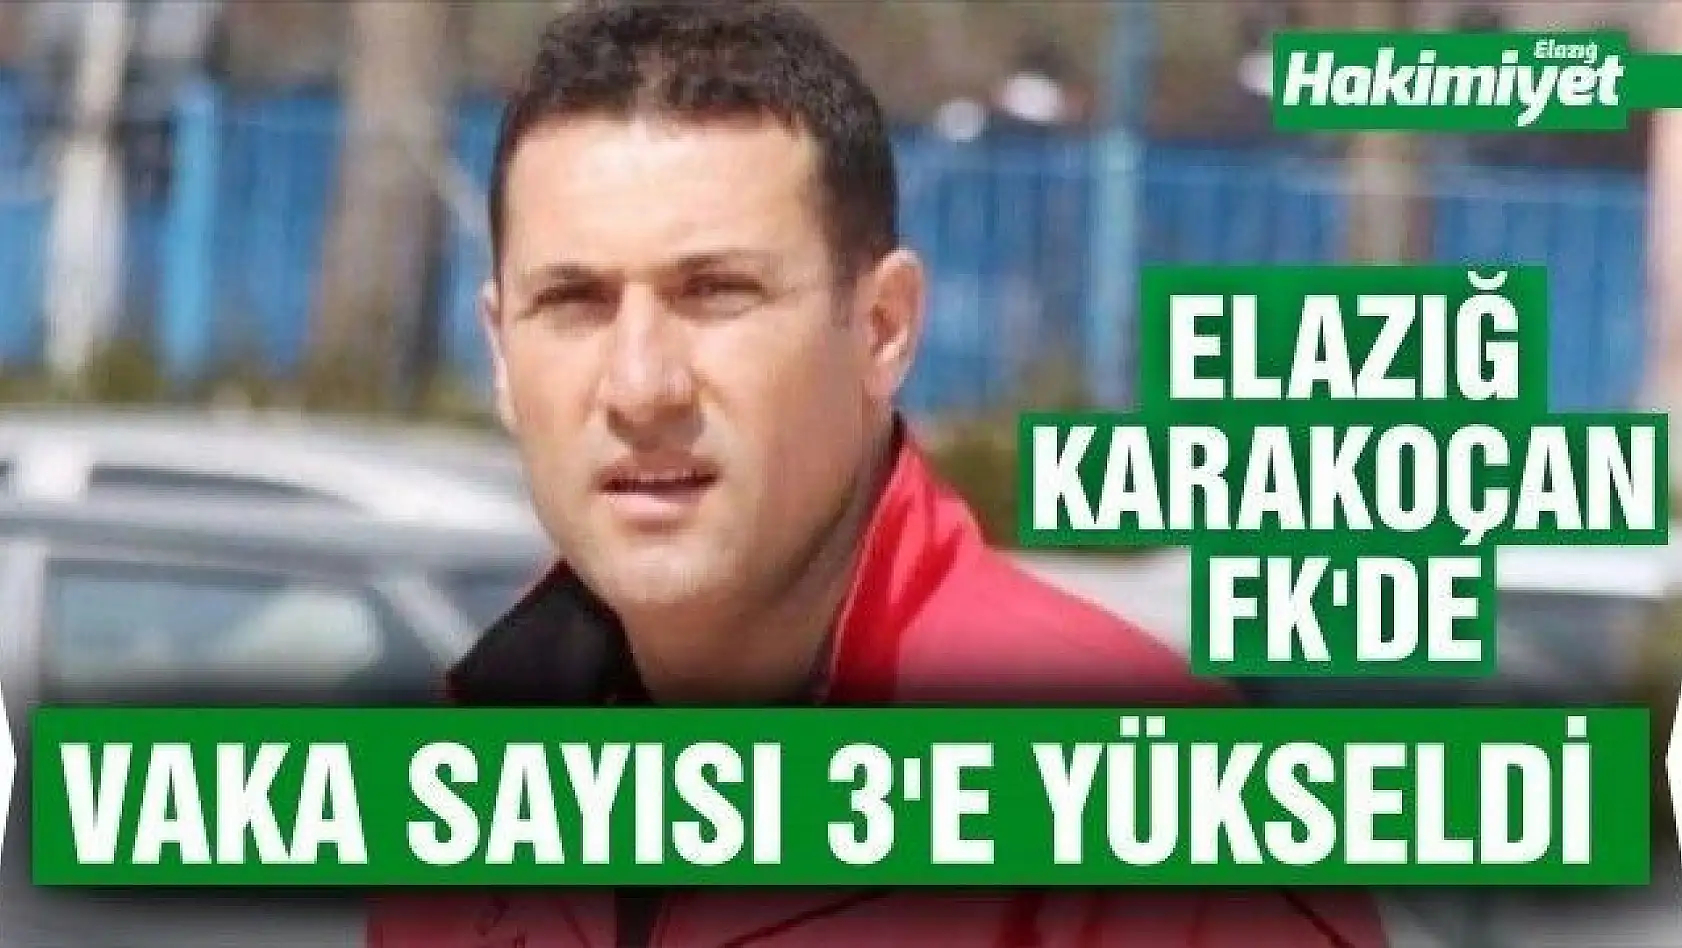  Elazığ Karakoçan FK'de vaka sayısı 3'e yükseldi